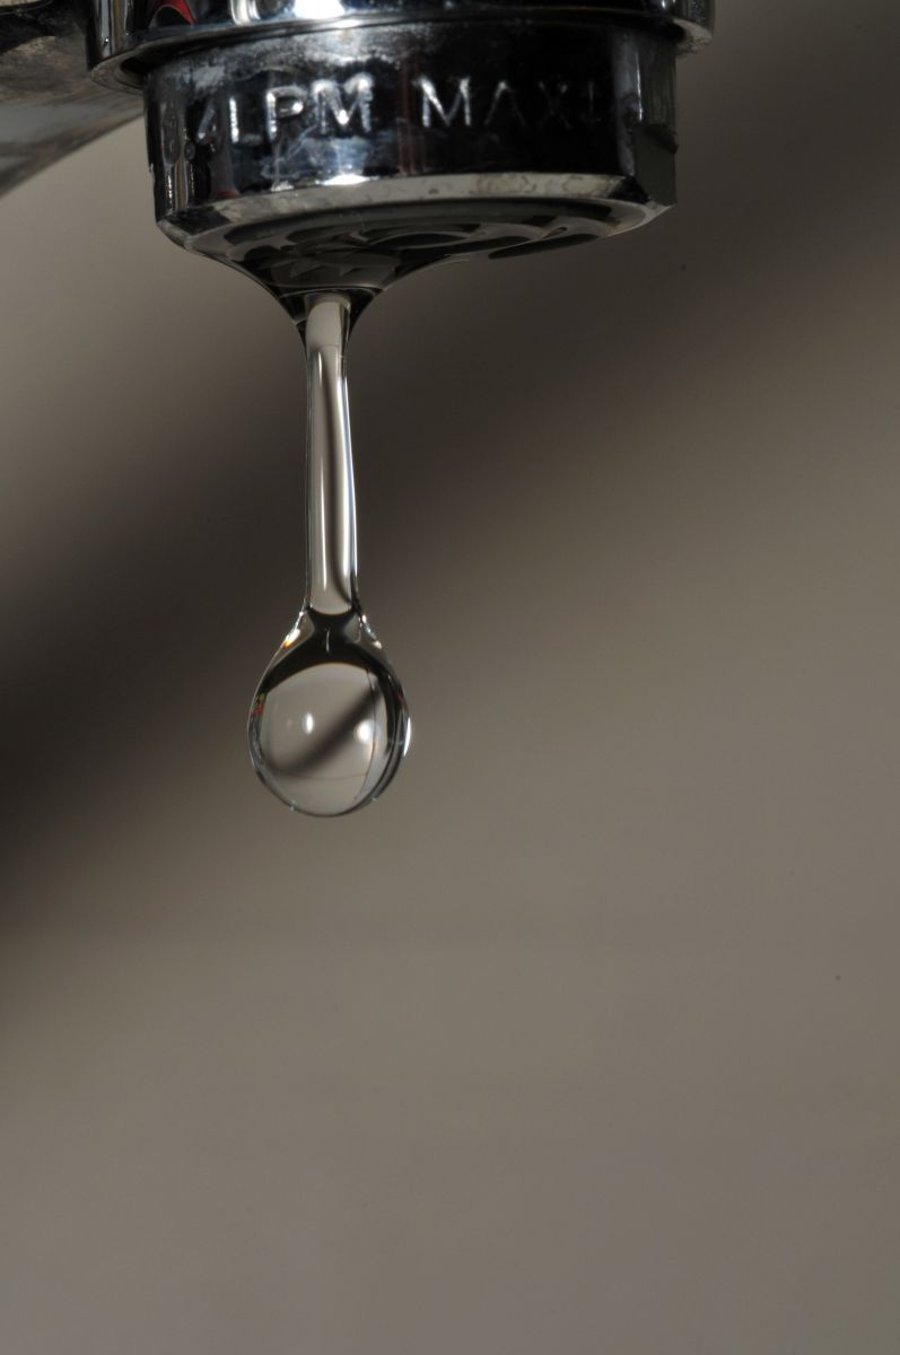 מים אפורים ימתקו: איך אפשר למחזר מים מצריכה ביתית?